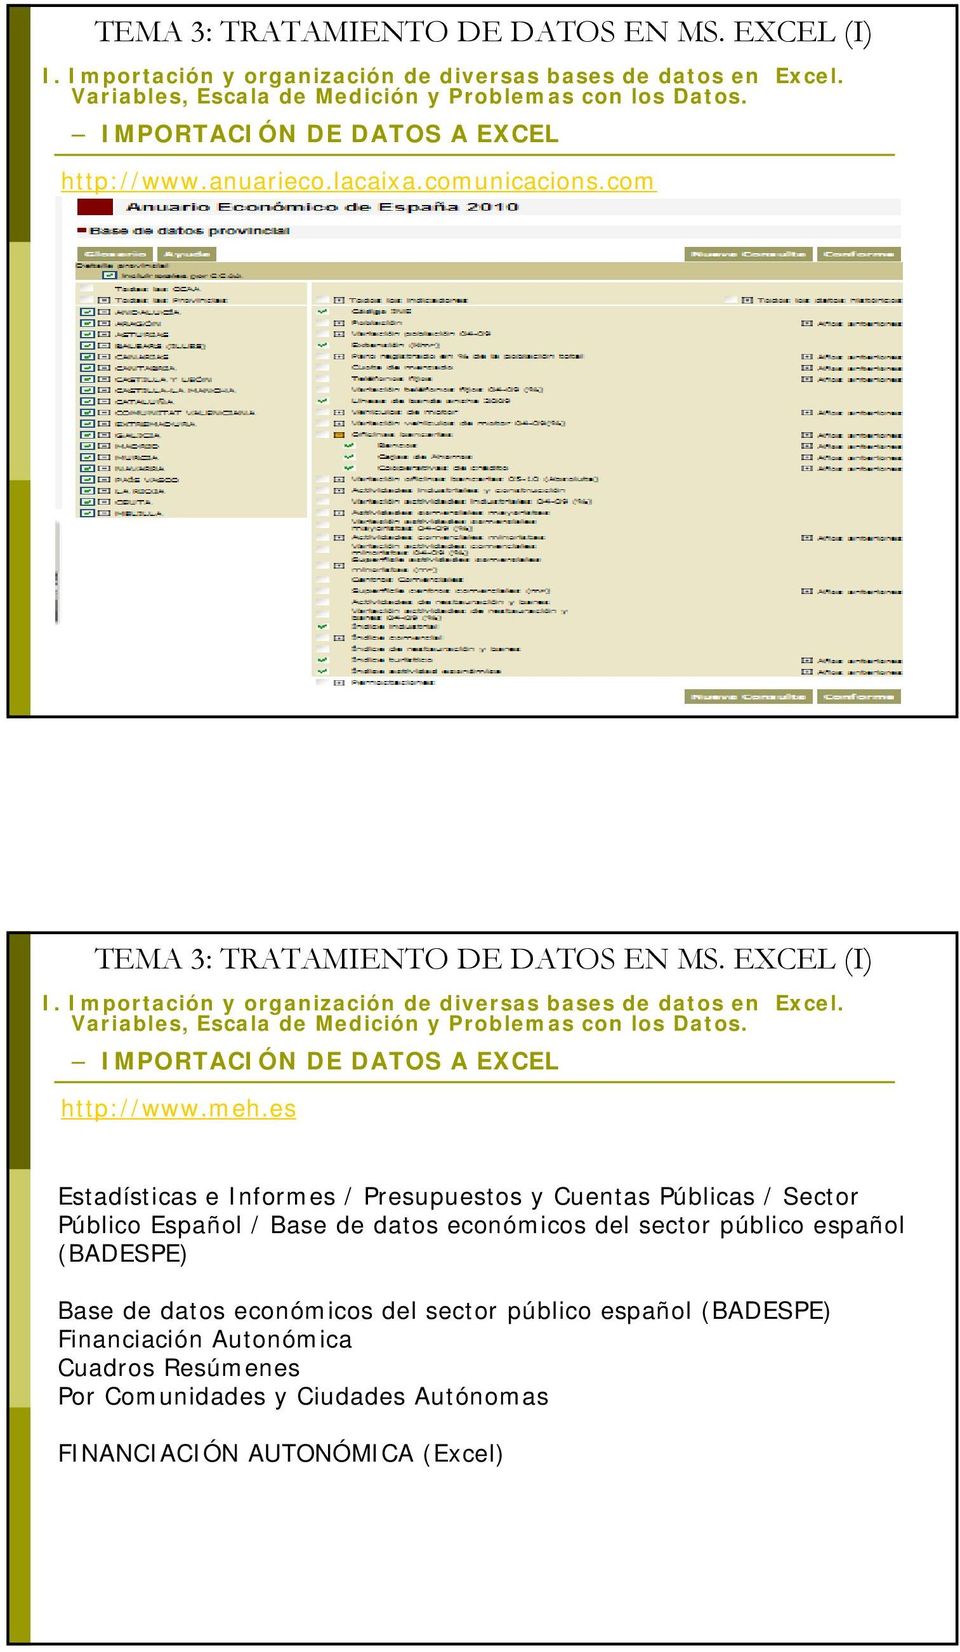 es Estadísticas e Informes / Presupuestos y Cuentas Públicas / Sector Público Español / Base de datos